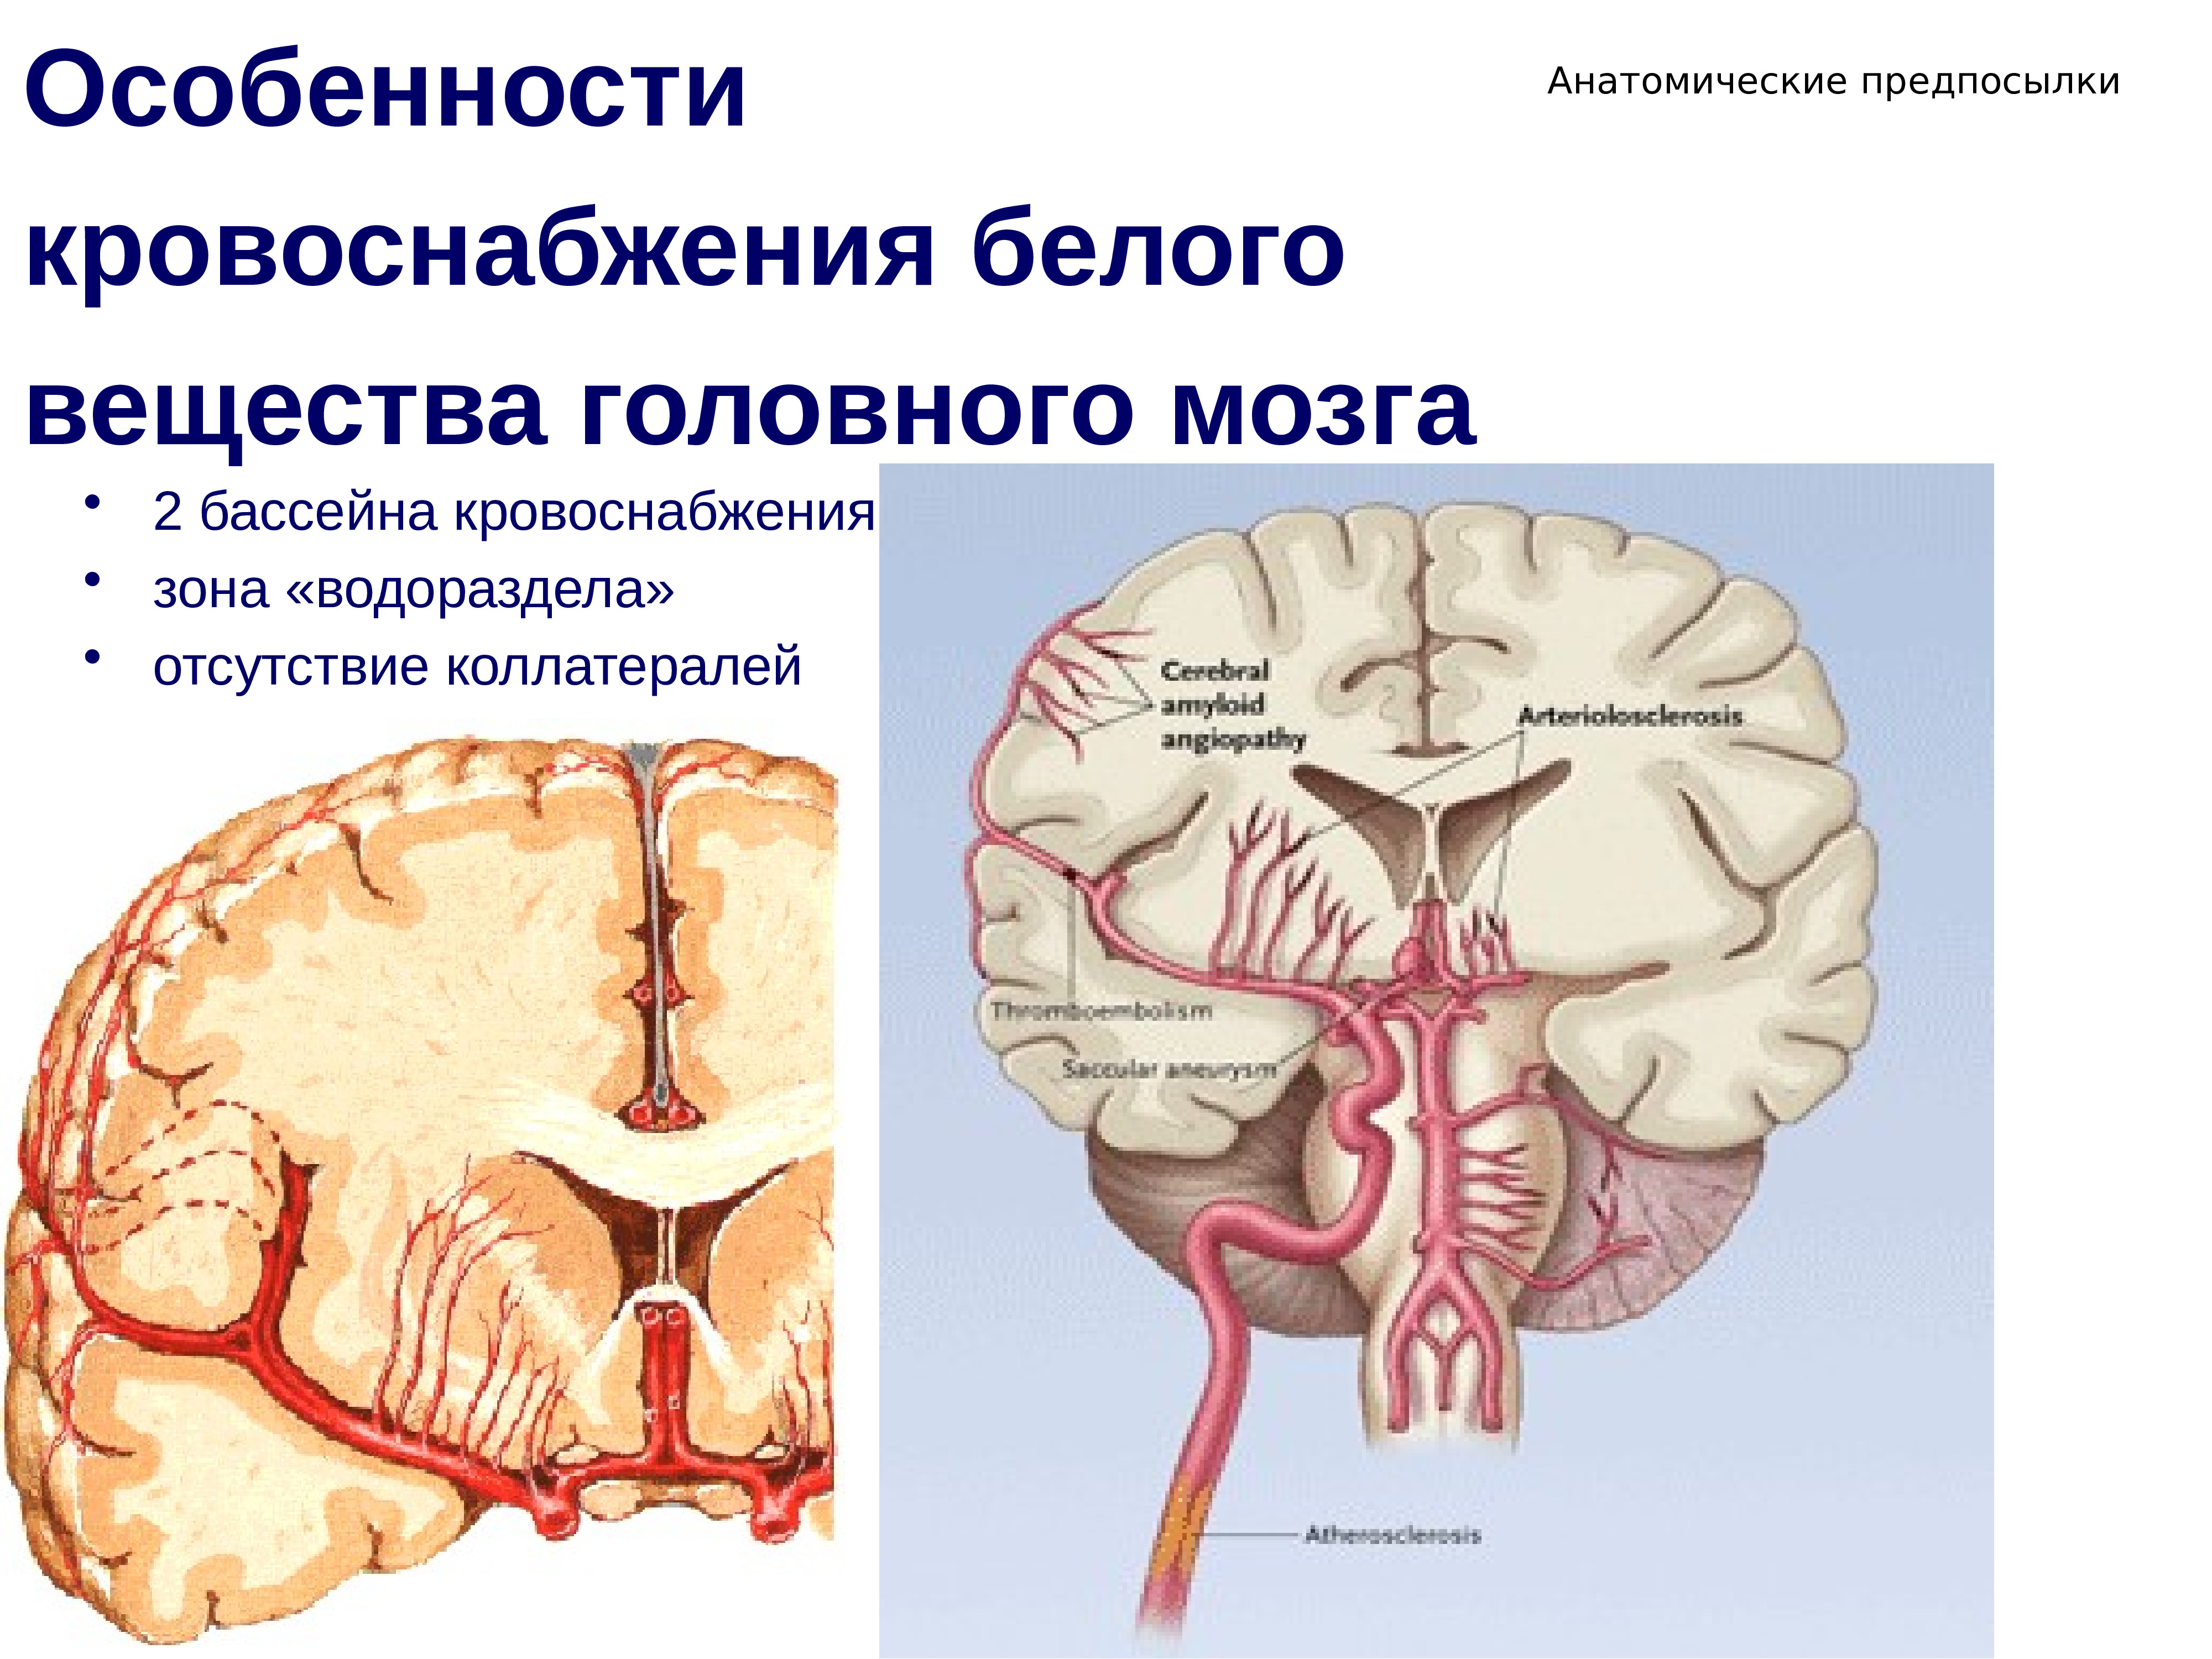 Поступление крови в мозг. Кровоснабжение вещества головного мозга. Кровоснабжение подкорковых структур. Бассейны кровоснабжения головного мозга. Зоны кровоснабжения головного мозга.